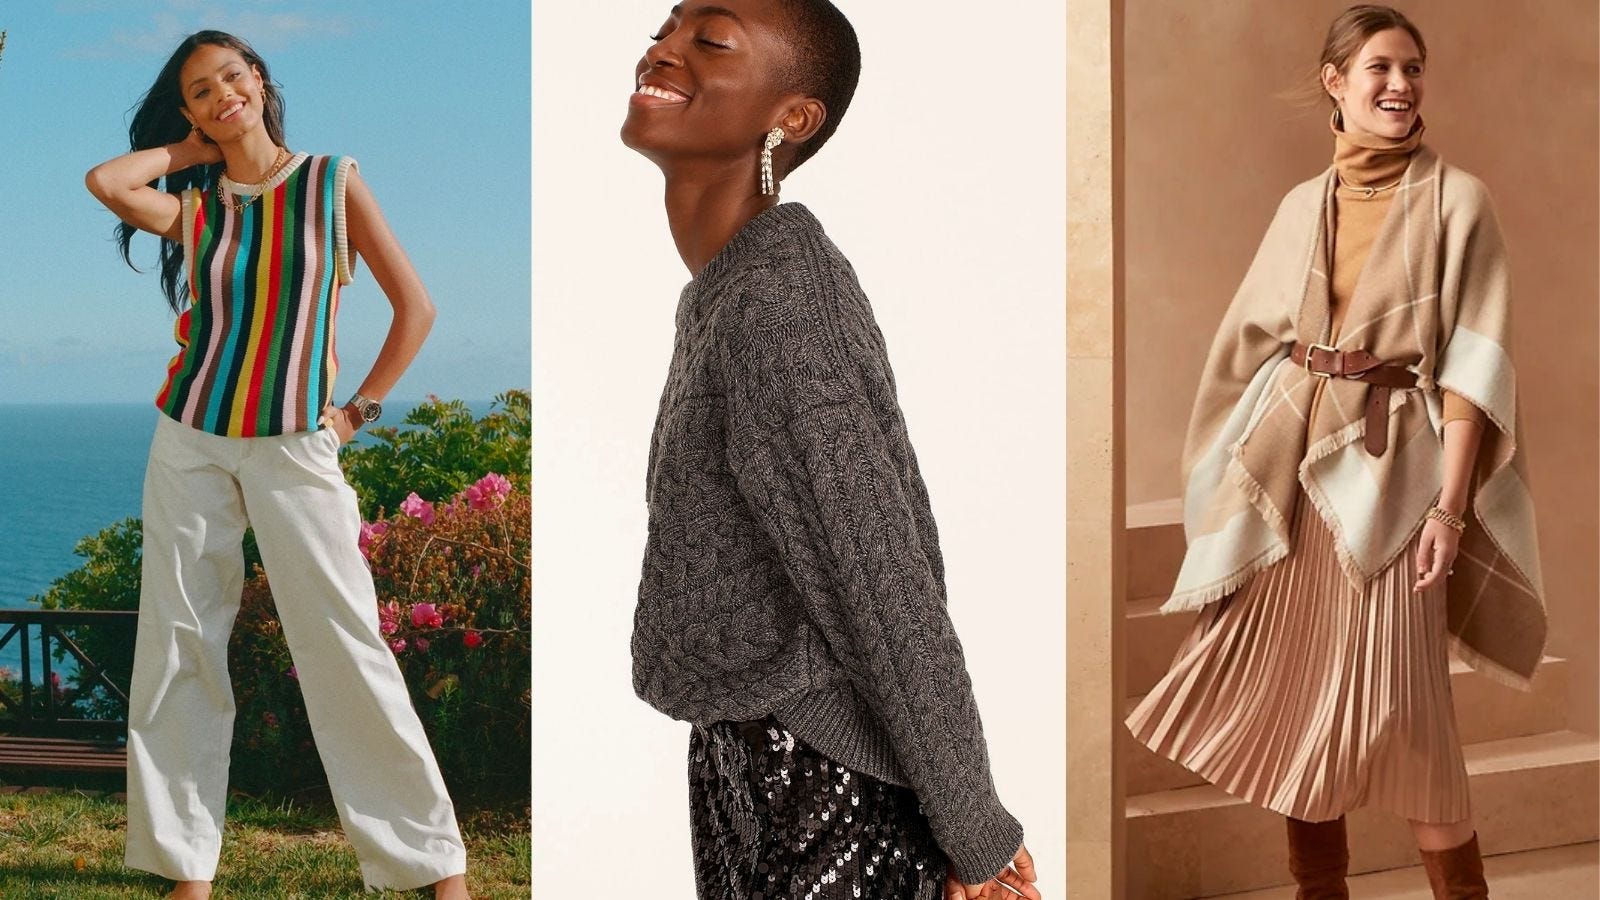 Op en neer gaan Van storm lawaai 2022 fashion trends: pearlcore, dopamine dressing and more